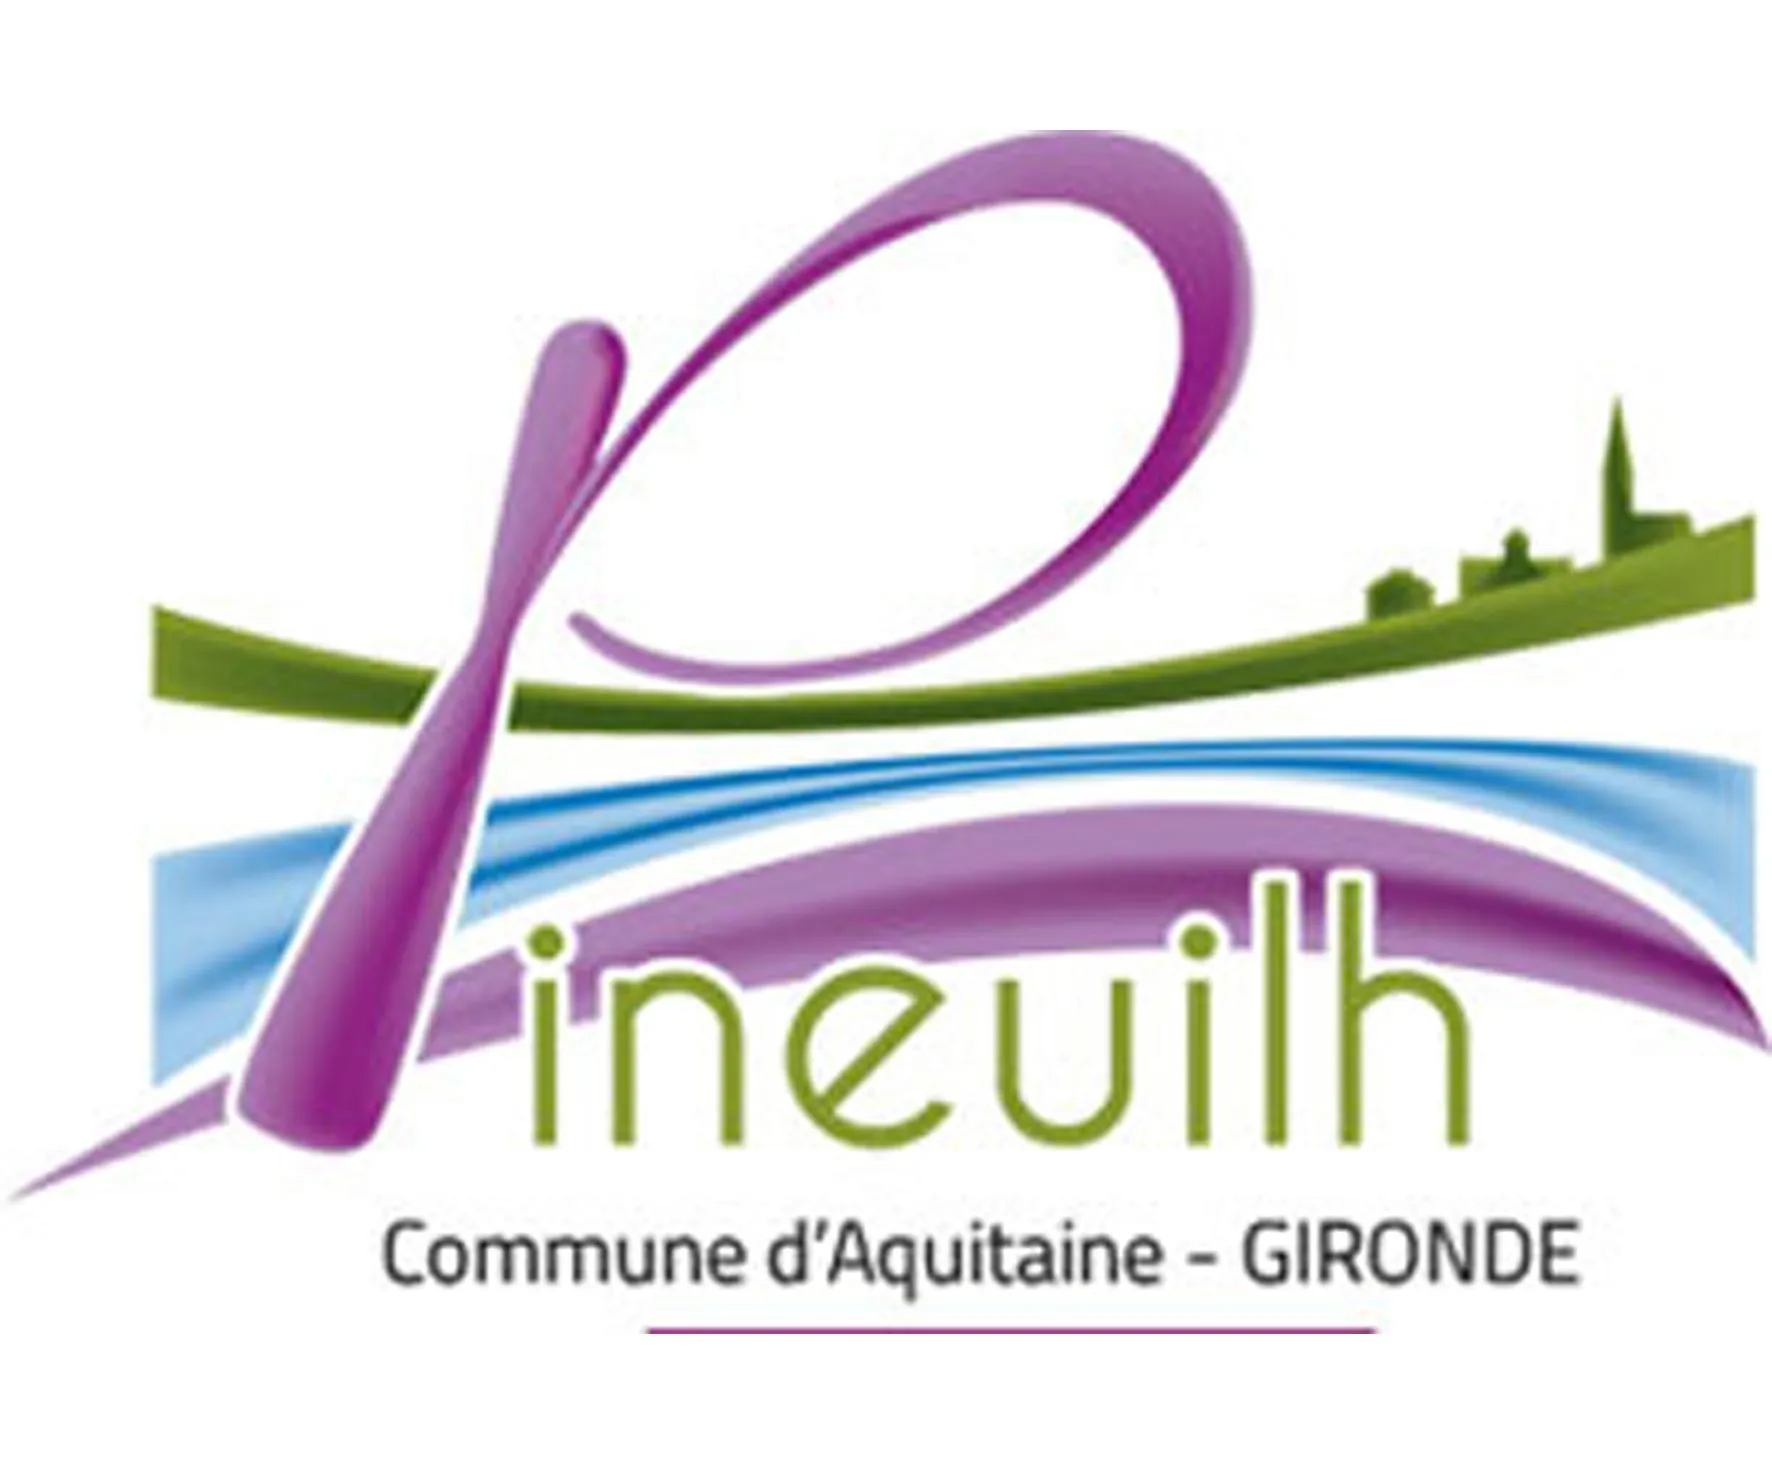 Pineuilh logo